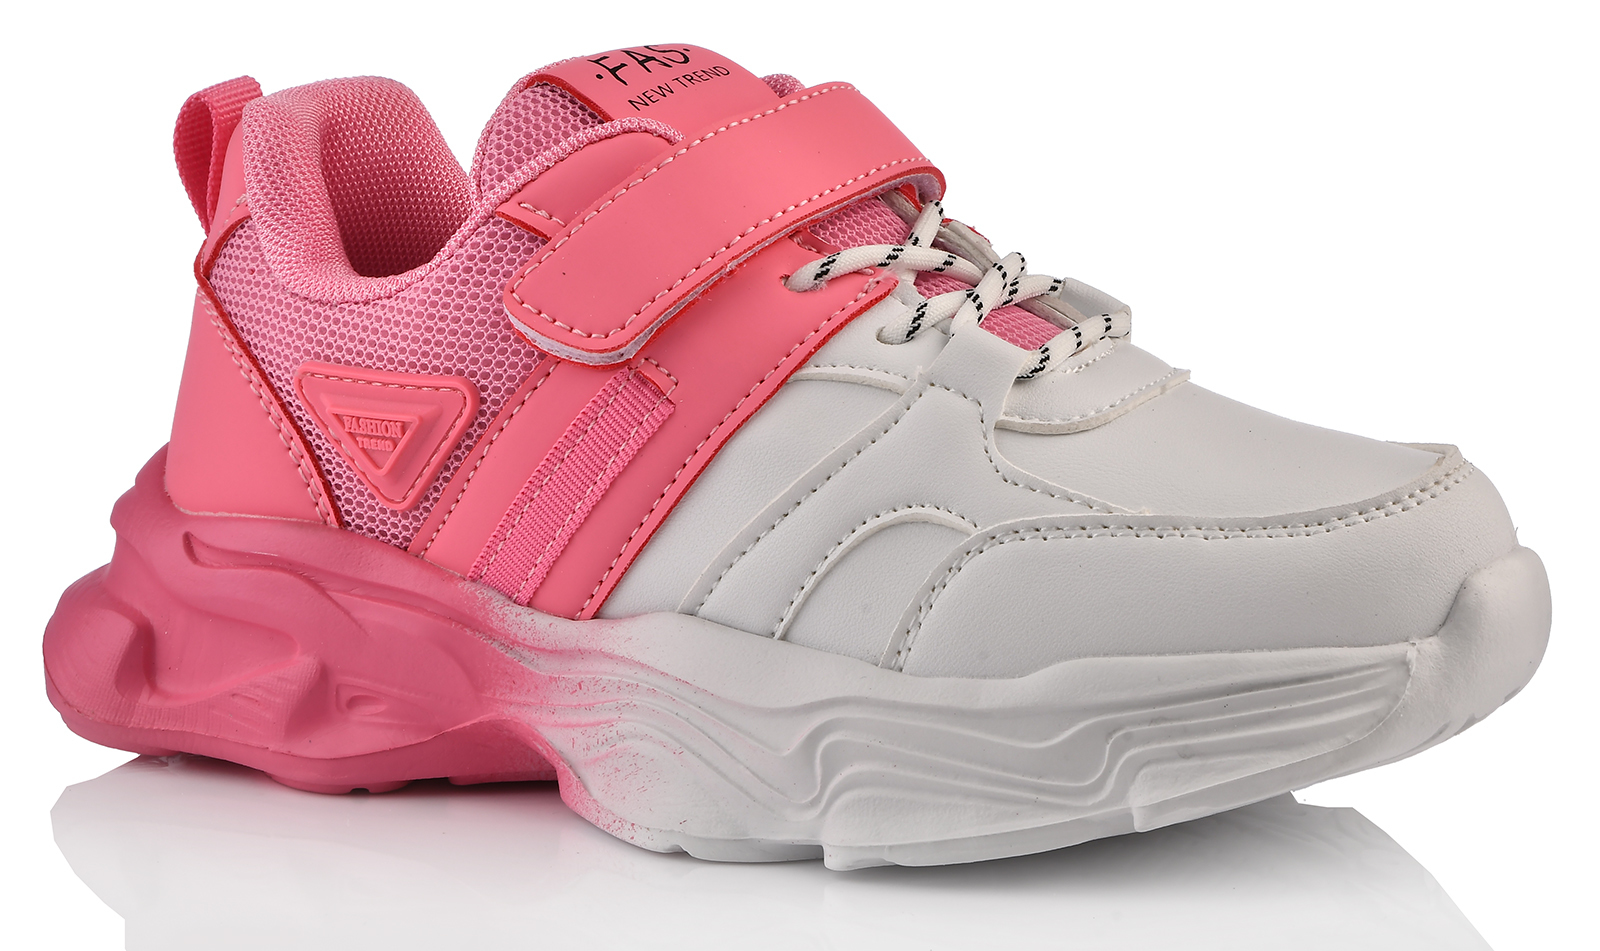 Кроссовки Tom-Miki для девочек, размер 38, T-10470-E, розовые, 1 пара